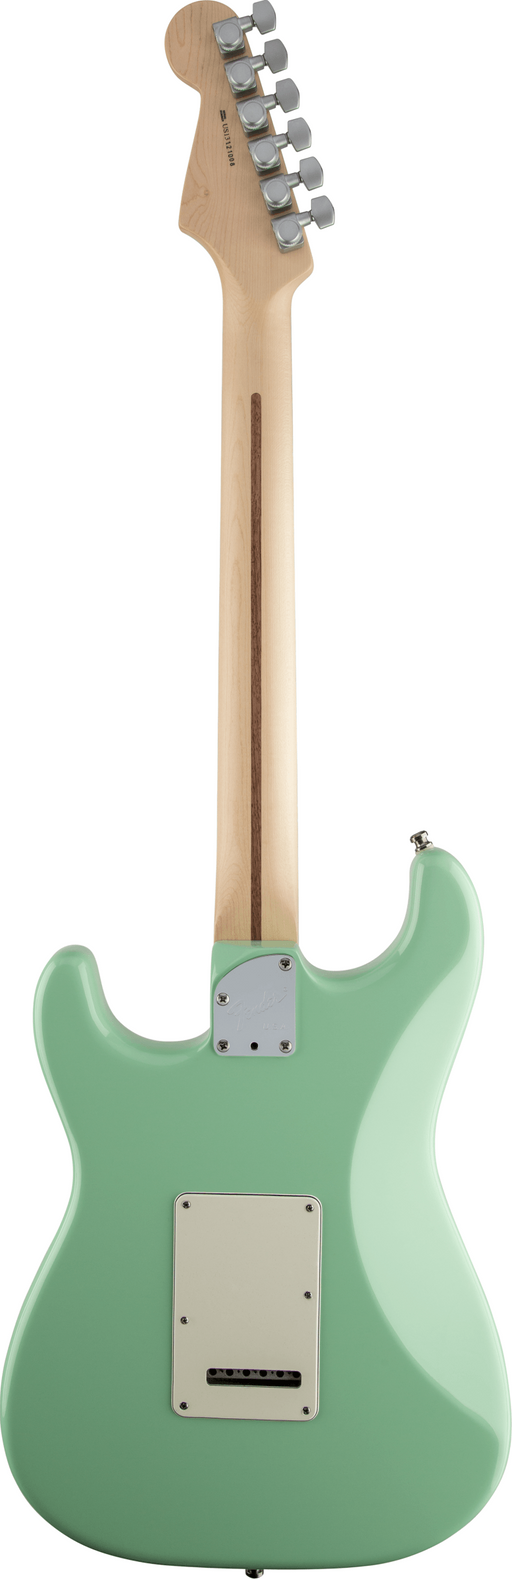 Fender Jeff Beck Stratocaster, Surf Green - Fair Deal Music